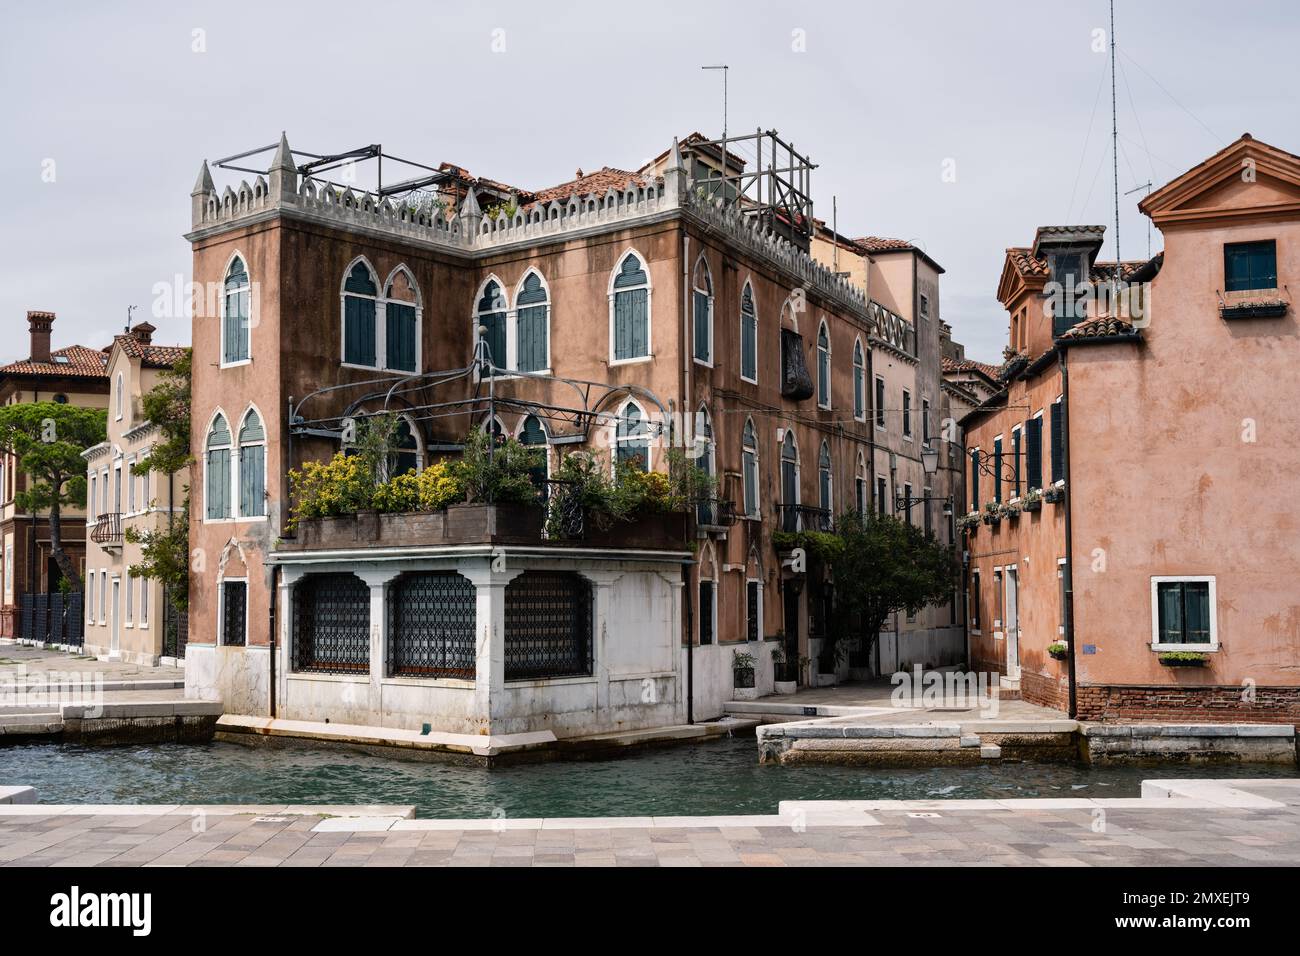 Venetian Palazzo at the Riva dei Sette Martiri in the Sestiere Castello District of Venice, Italy Stock Photo